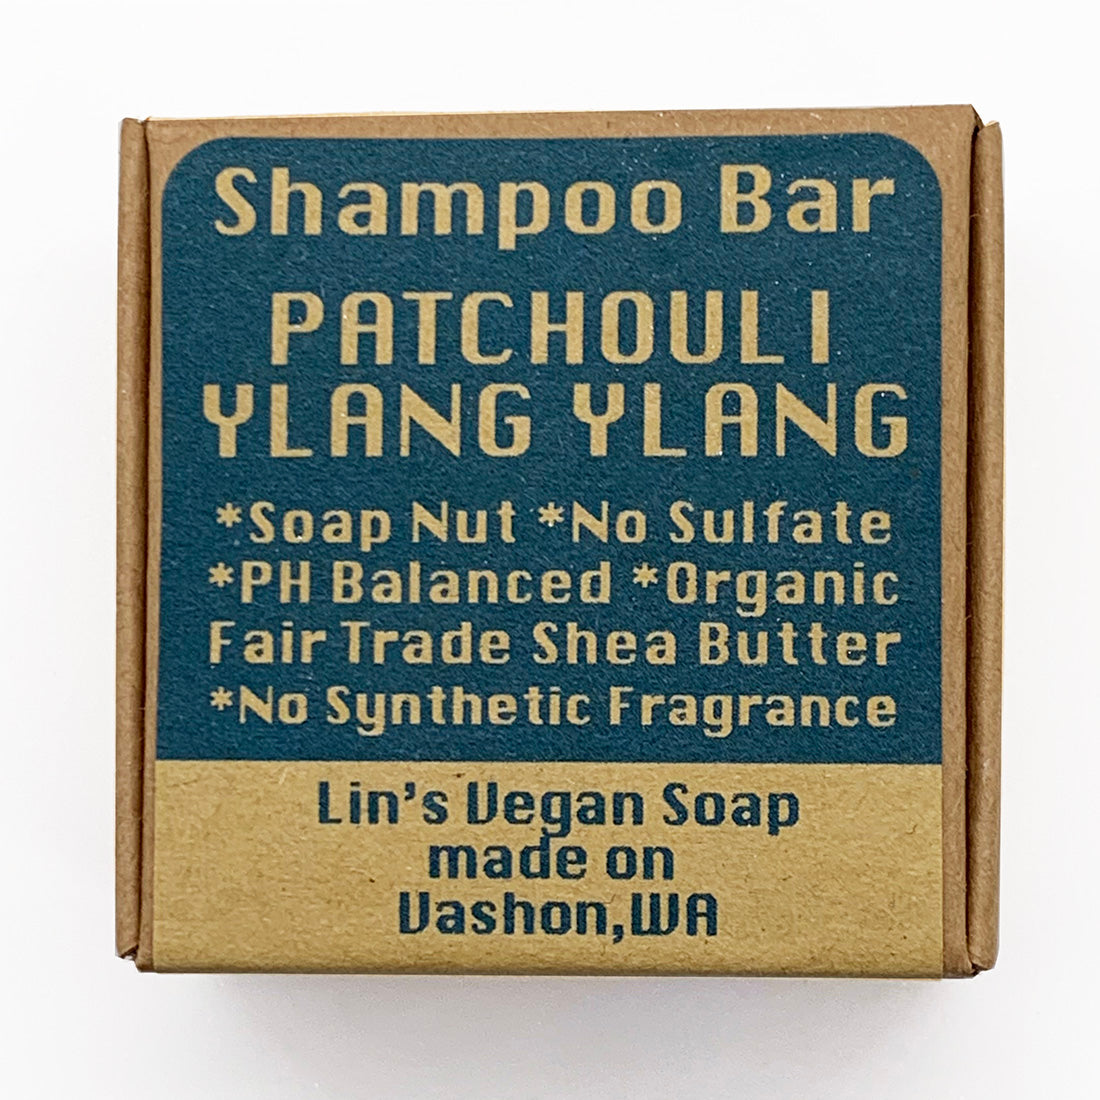 Lin's Patchouli Ylang Ylang Soap Nut Shampoo Bar